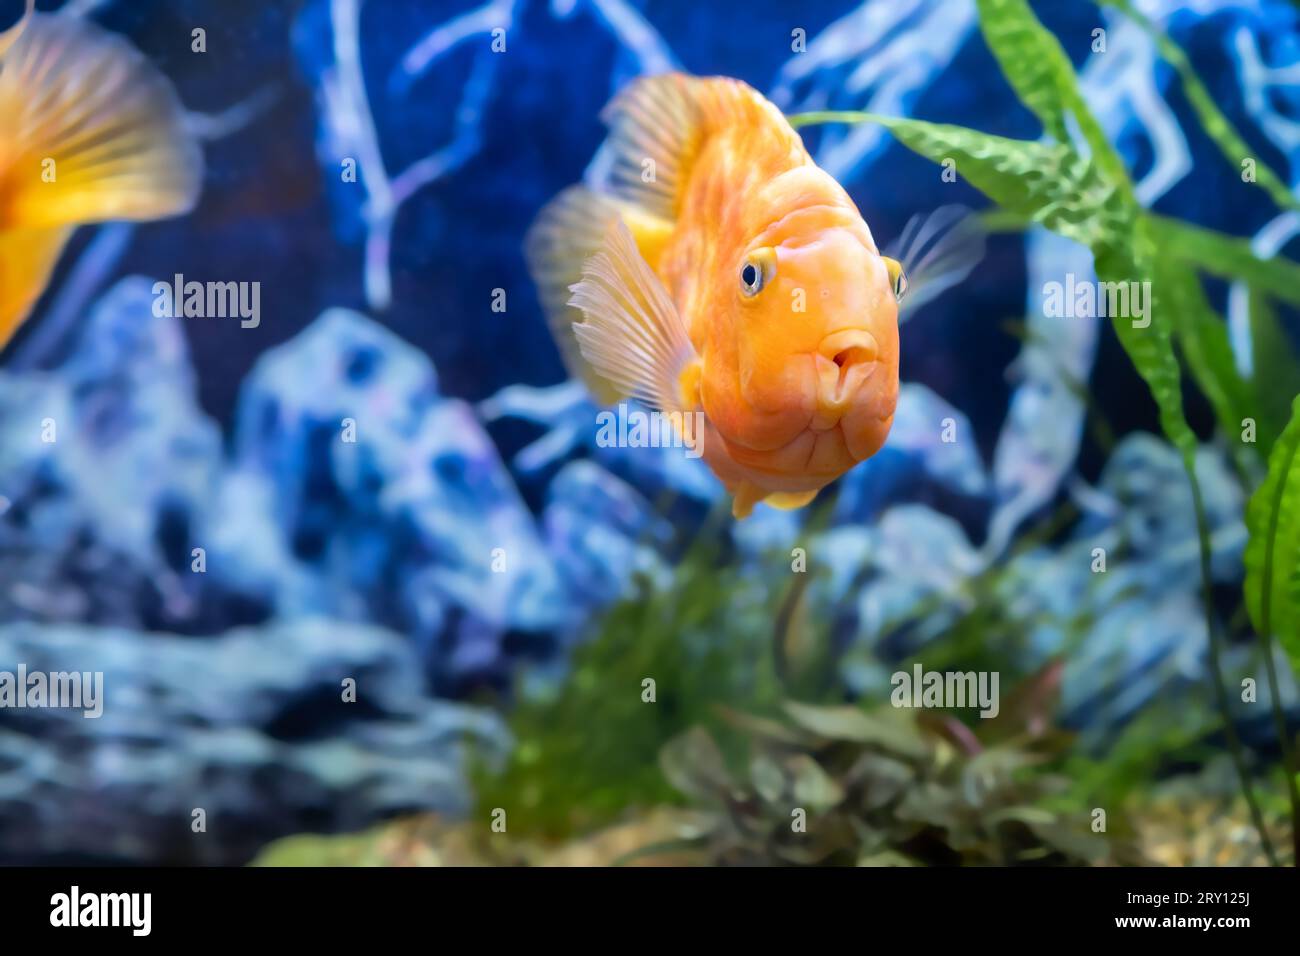 Orange parrot fish in the aquarium. Red Parrot Cichlid. Aquarium fish. Stock Photo